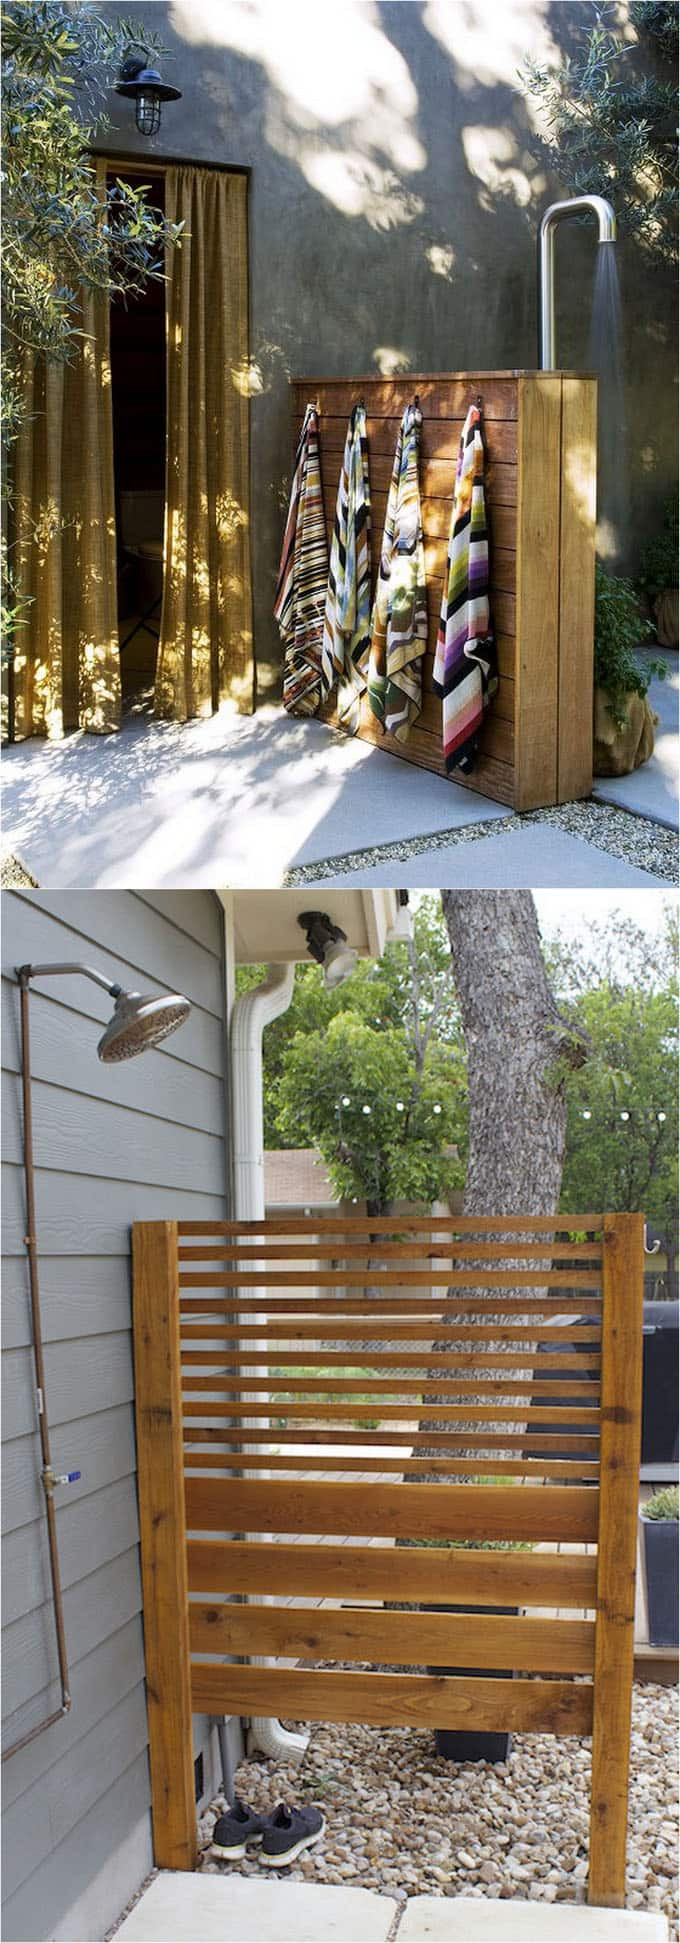 DIY Outdoor Shower Plumbing
 32 Beautiful DIY Outdoor Shower Ideas for the Best